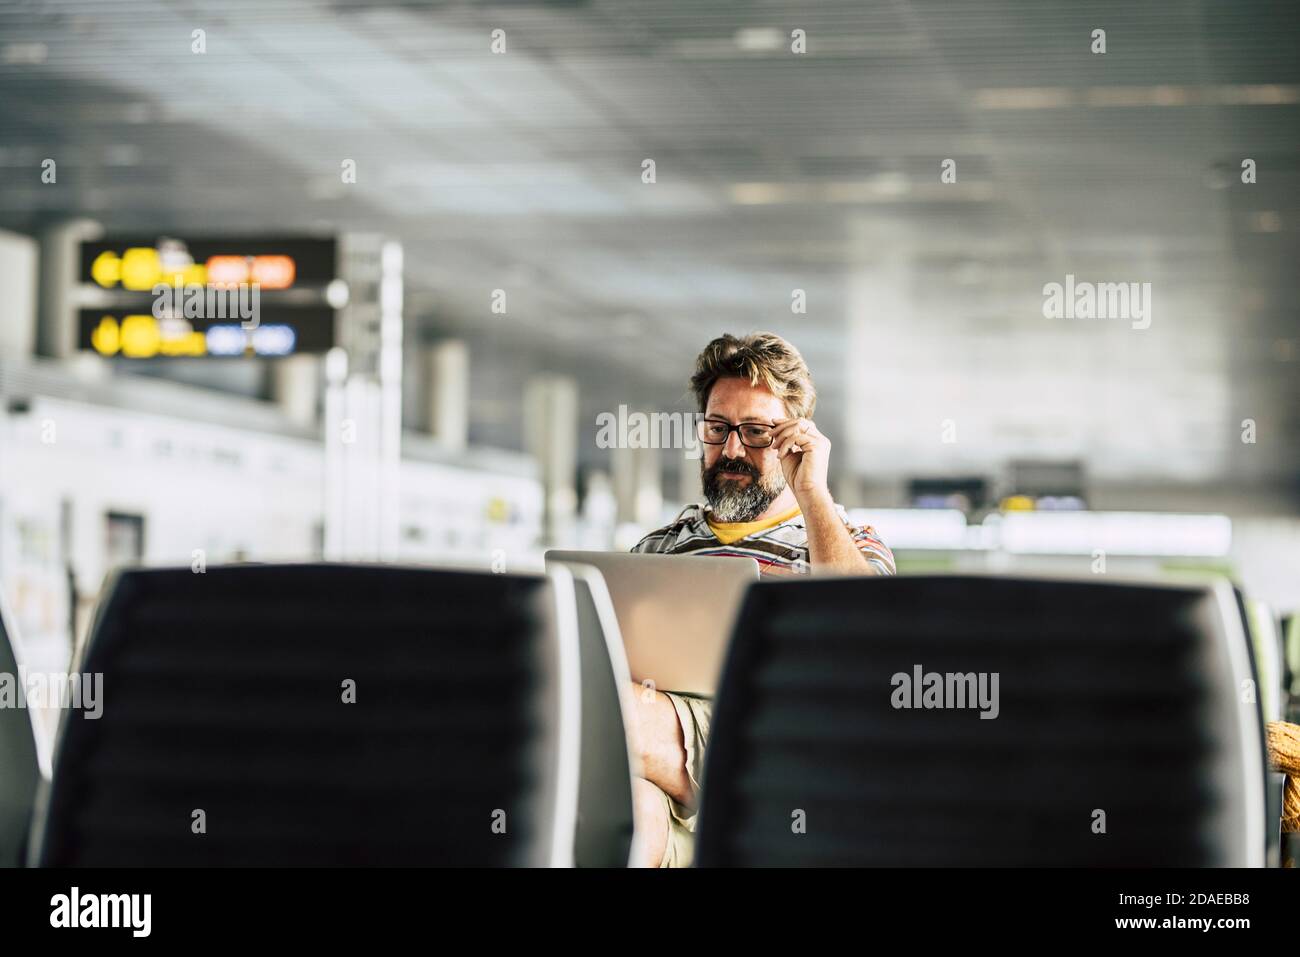 Erwachsene kaukasischen Mann arbeiten an einem Laptop-Computer wartet seine Flug am Flugsteig - Konzept des digitalen Nomaden Und Technologie Job bezogen - moderne Menschen und Internet-Verbindung Stockfoto